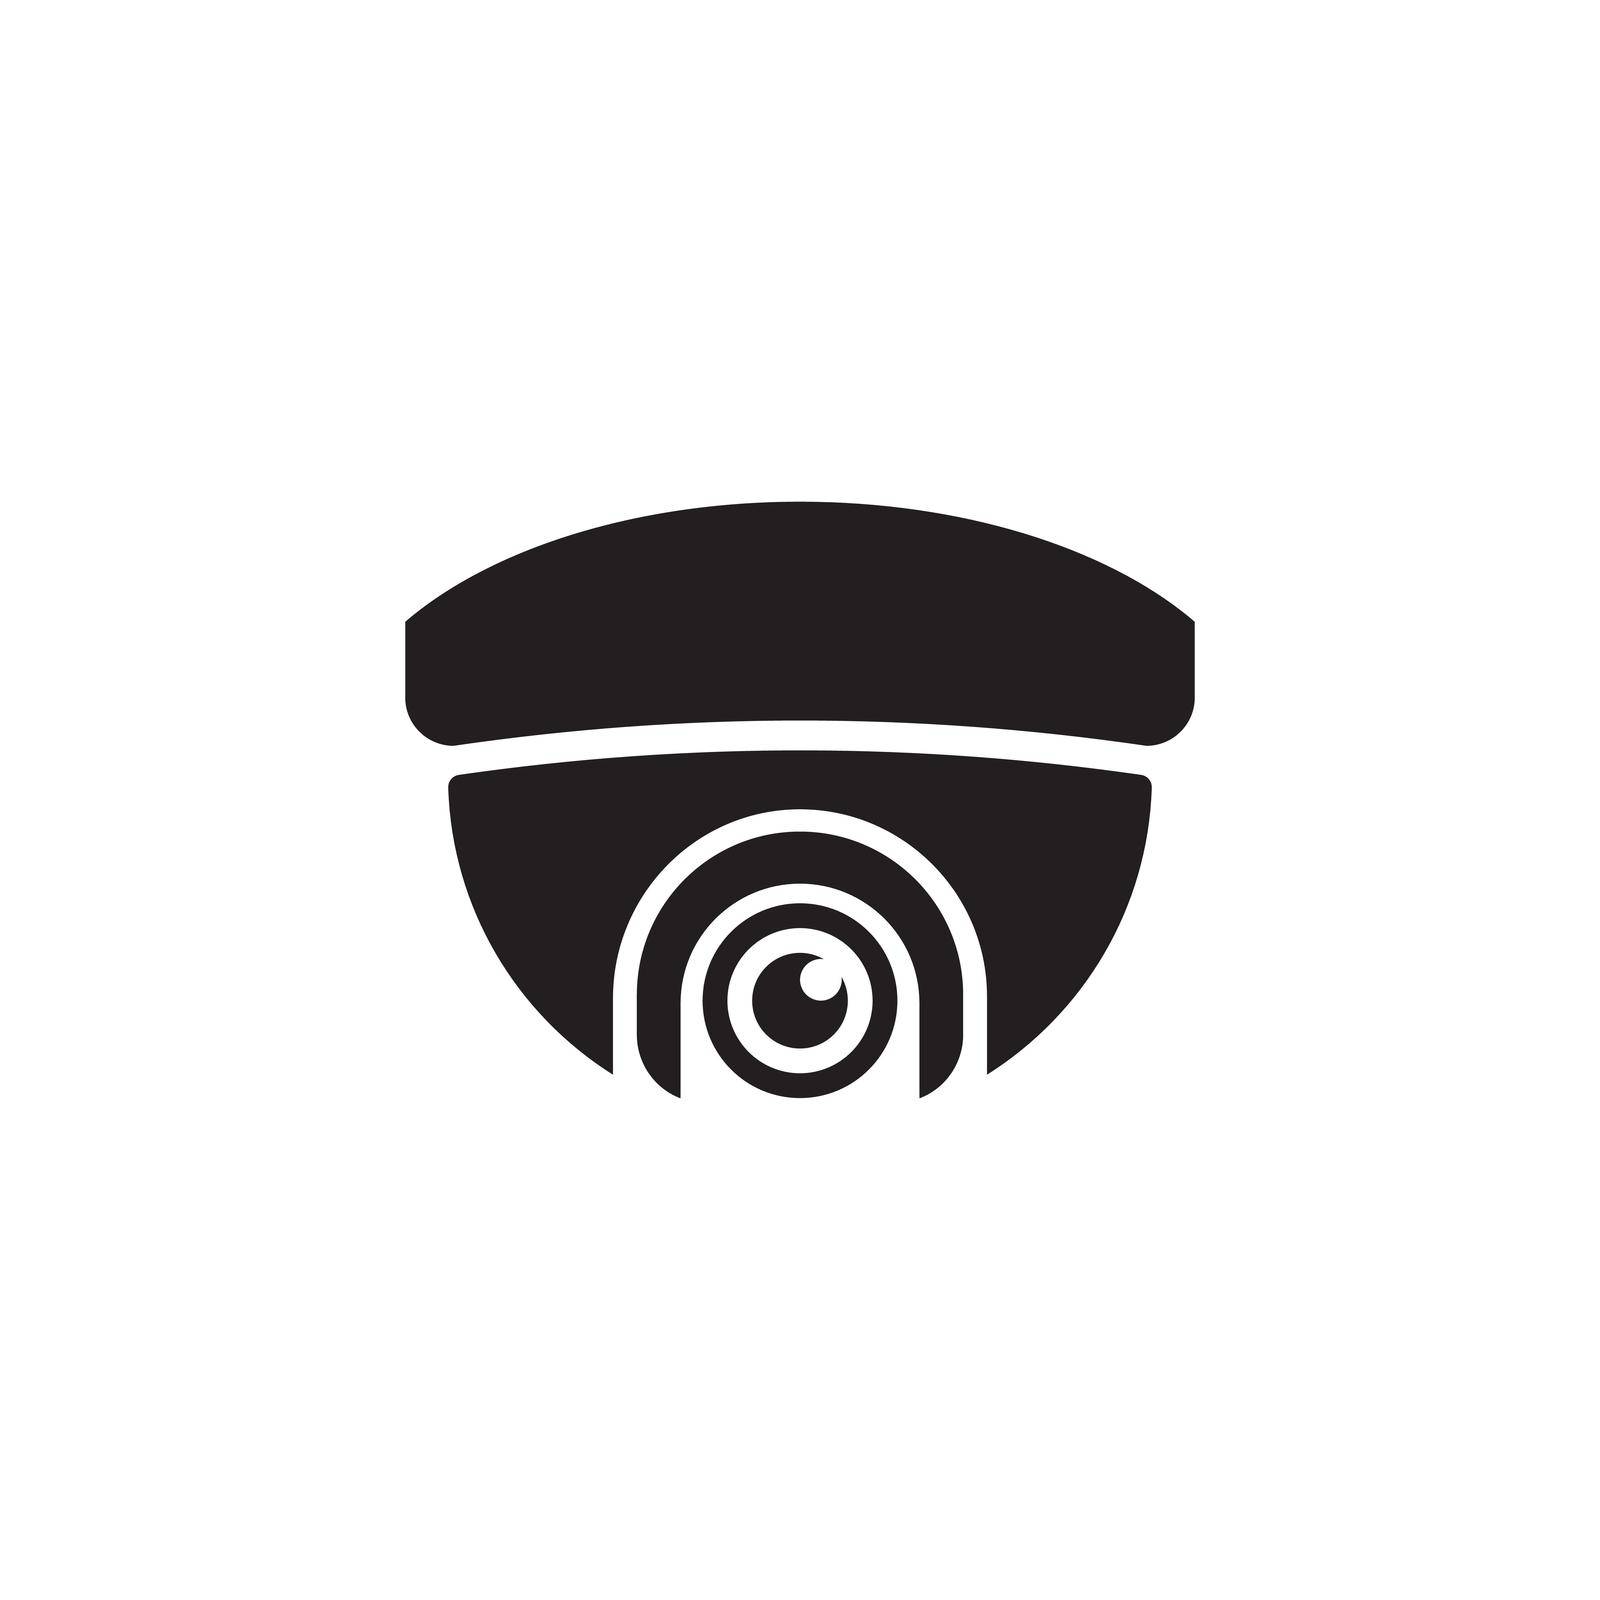 CCTV Vector icon design illustration by Elaelo